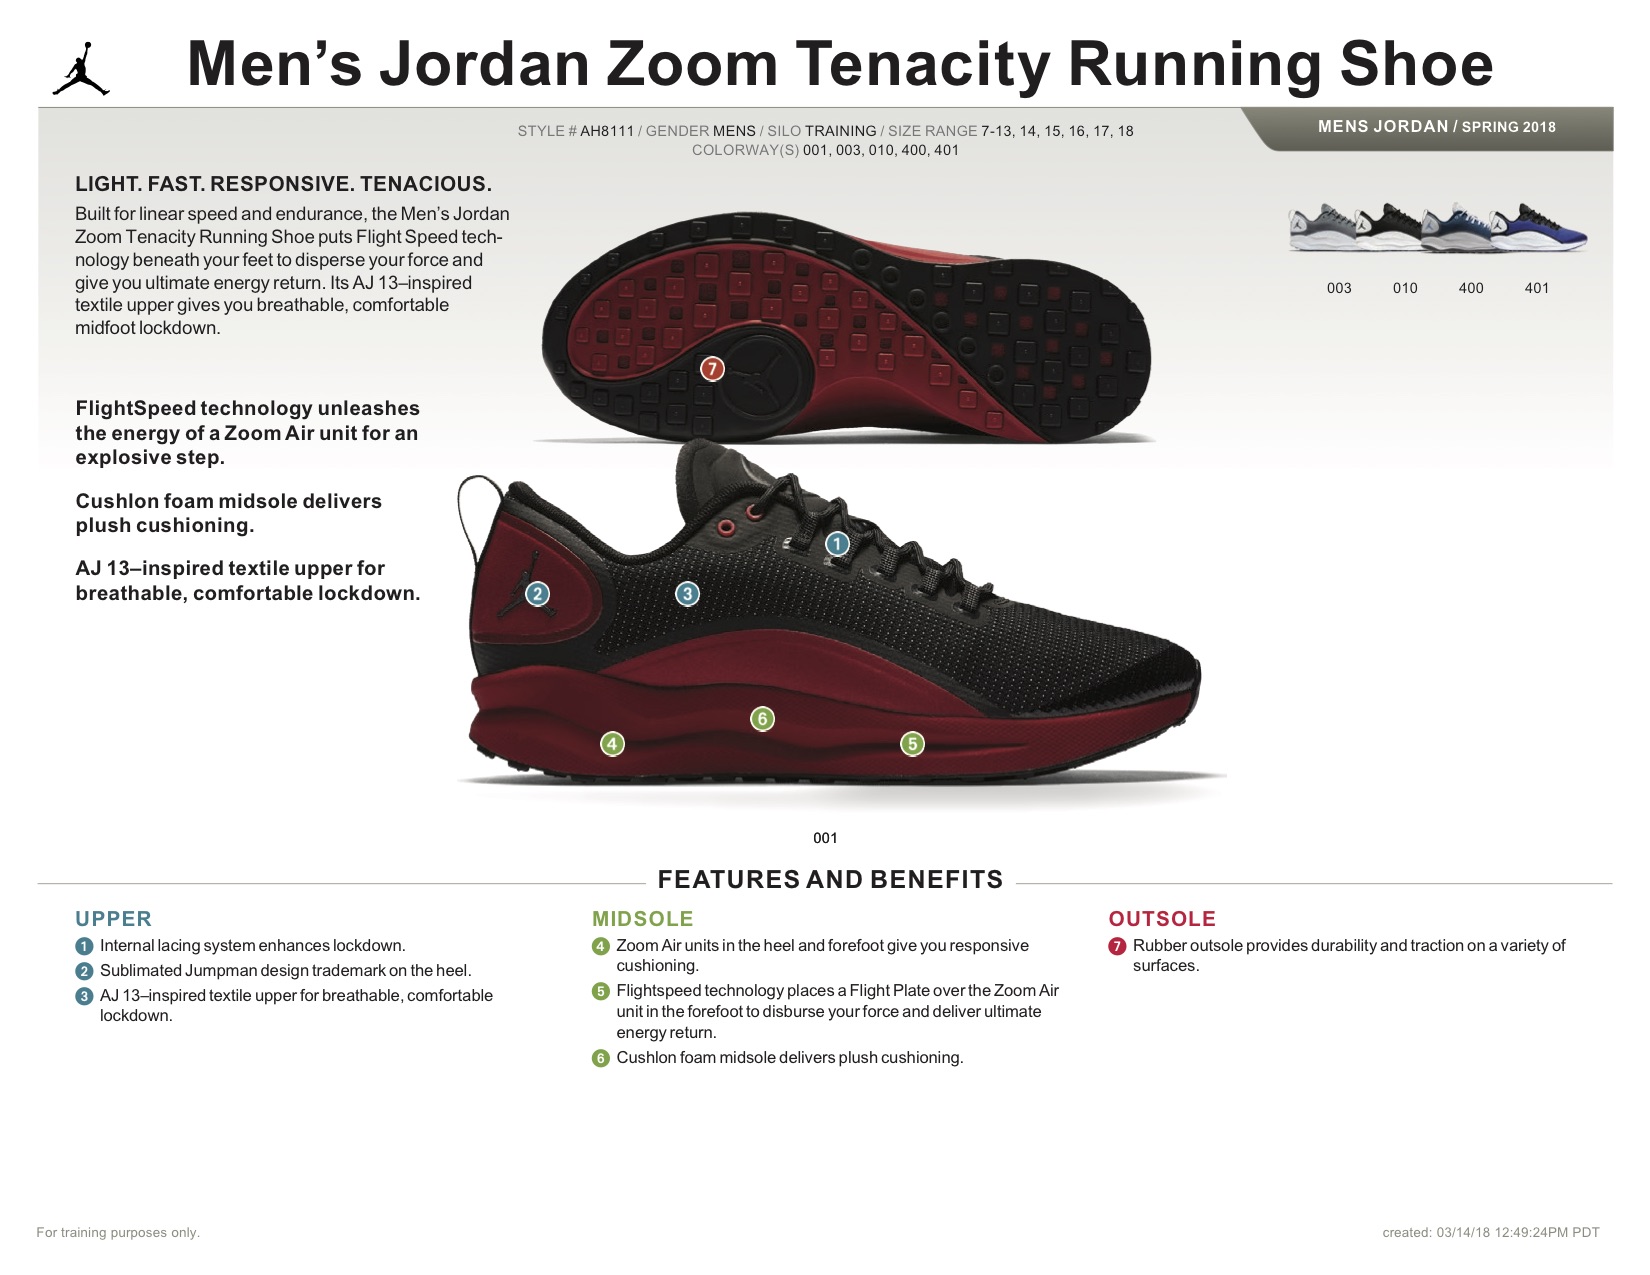 Jordan Brand and Nike Basketball 